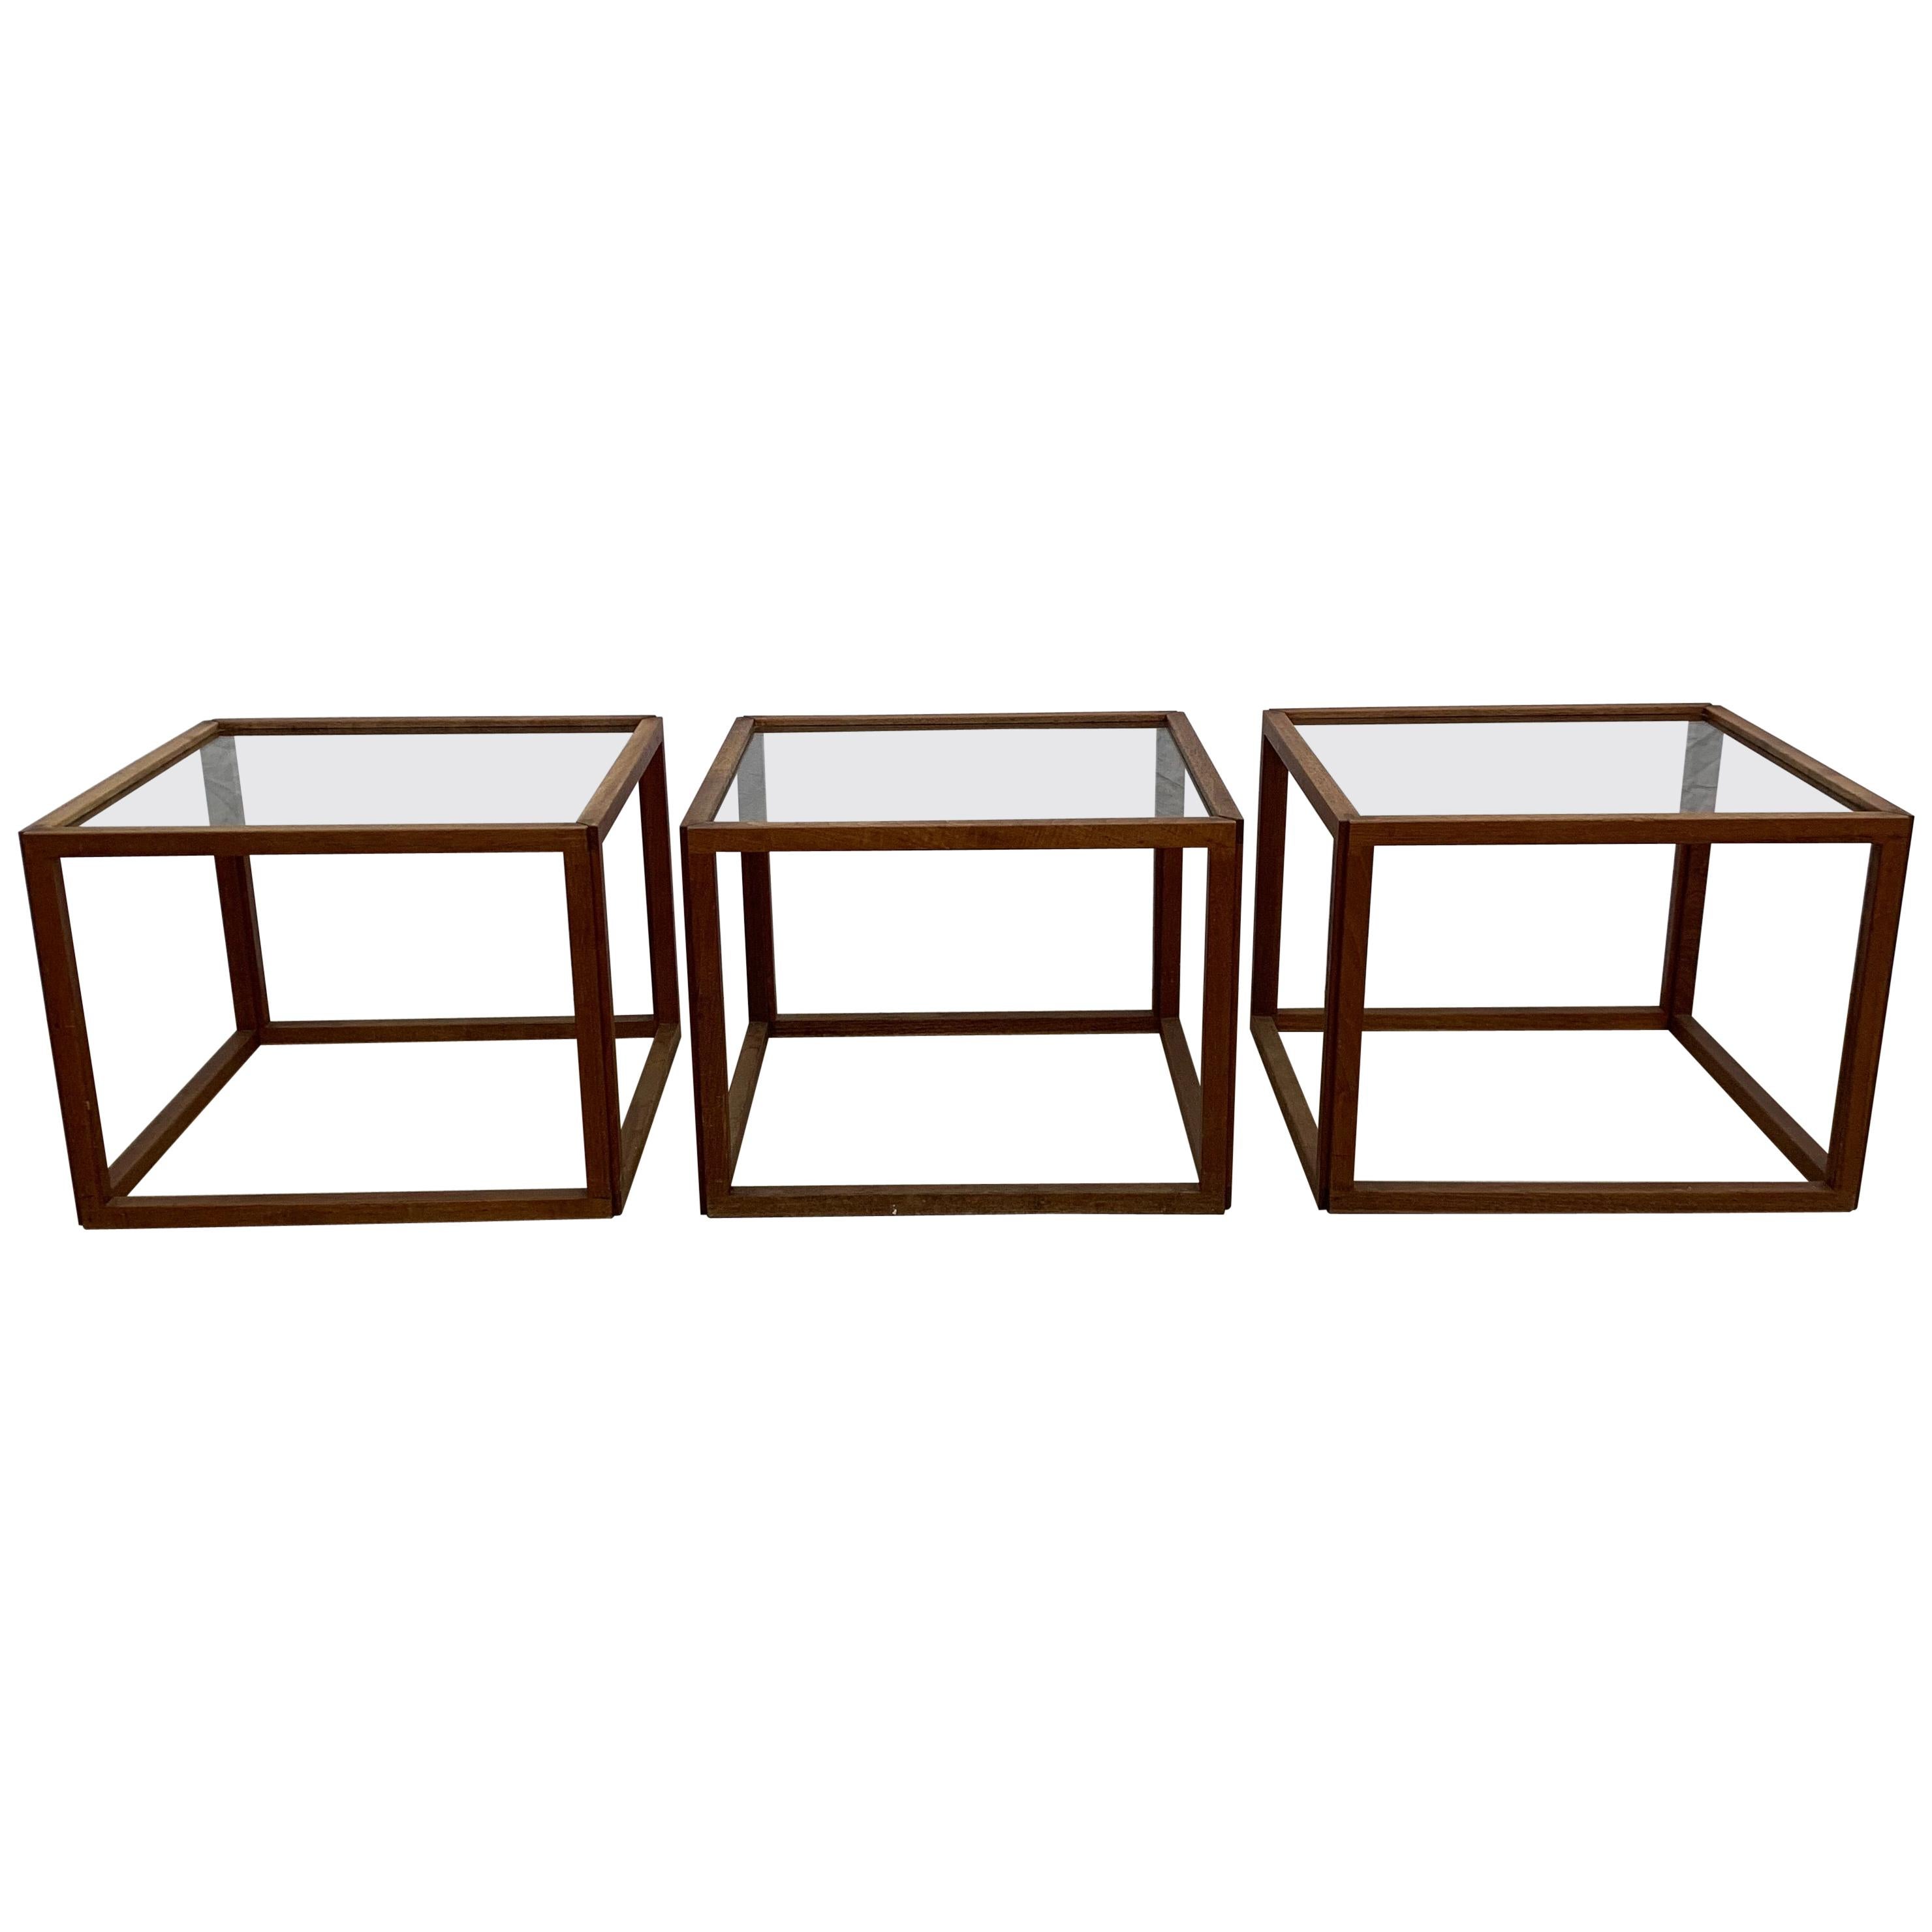 Set of 3 Kai Kristiansen Teak Cube Tables, Denmark, 1950s